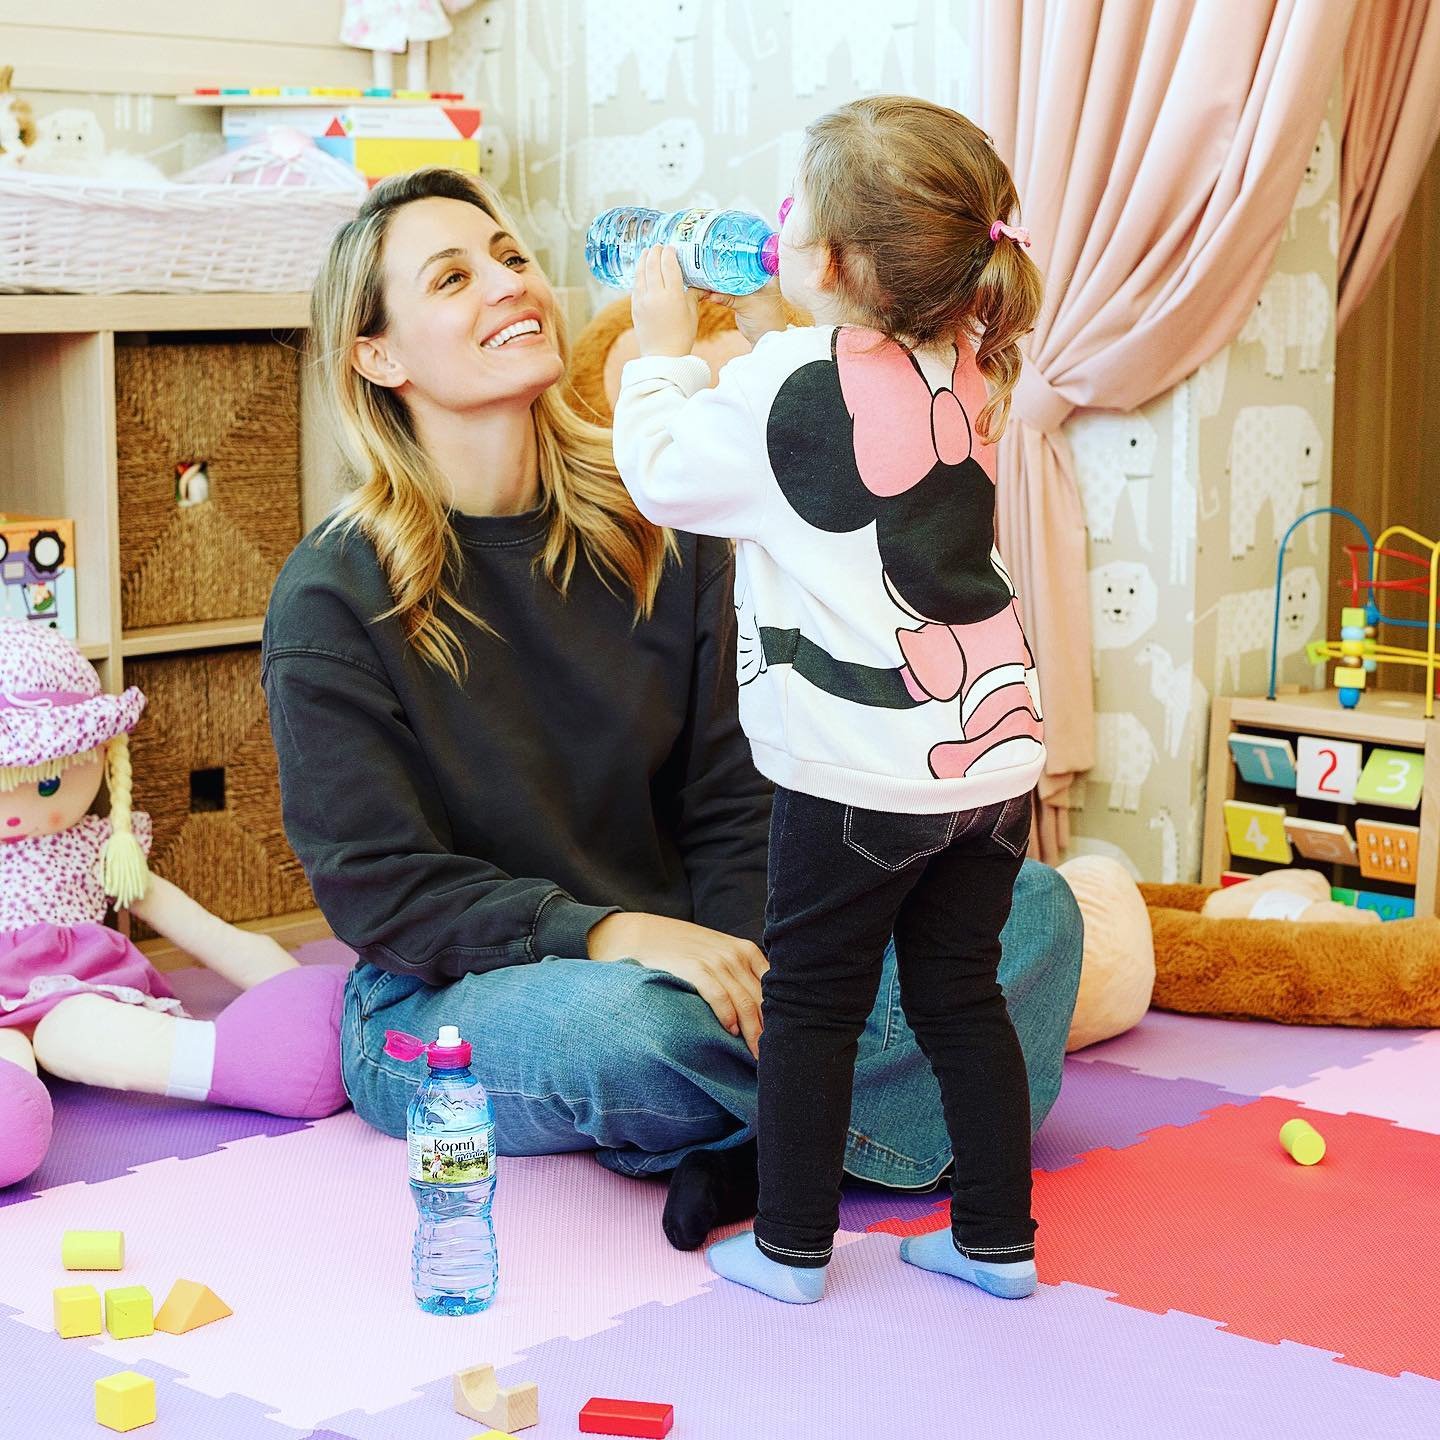 Ελεονώρα Μελέτη: Το ροζ παιδικό δωμάτιο της κόρης της είναι σα βγαλμένο από παραμύθι!